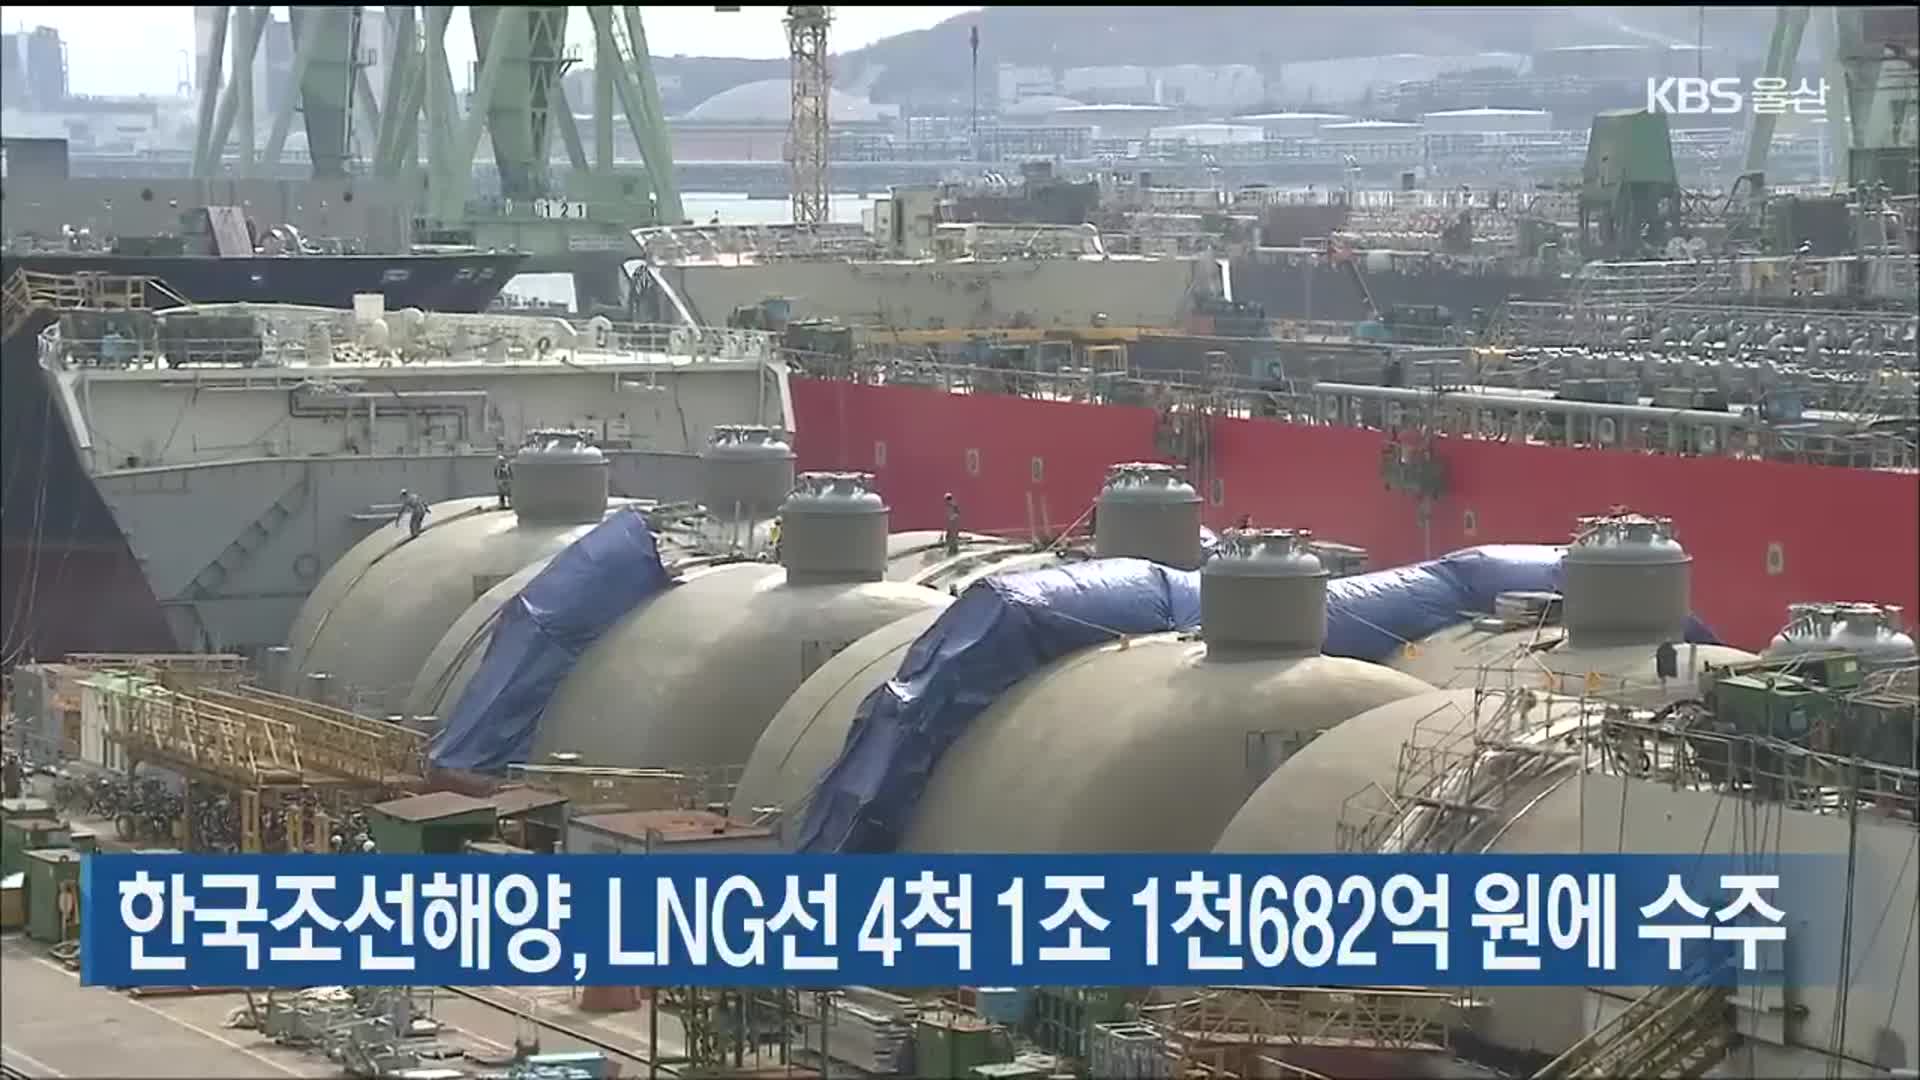 한국조선해양, LNG선 4척 1조 1천682억 원에 수주